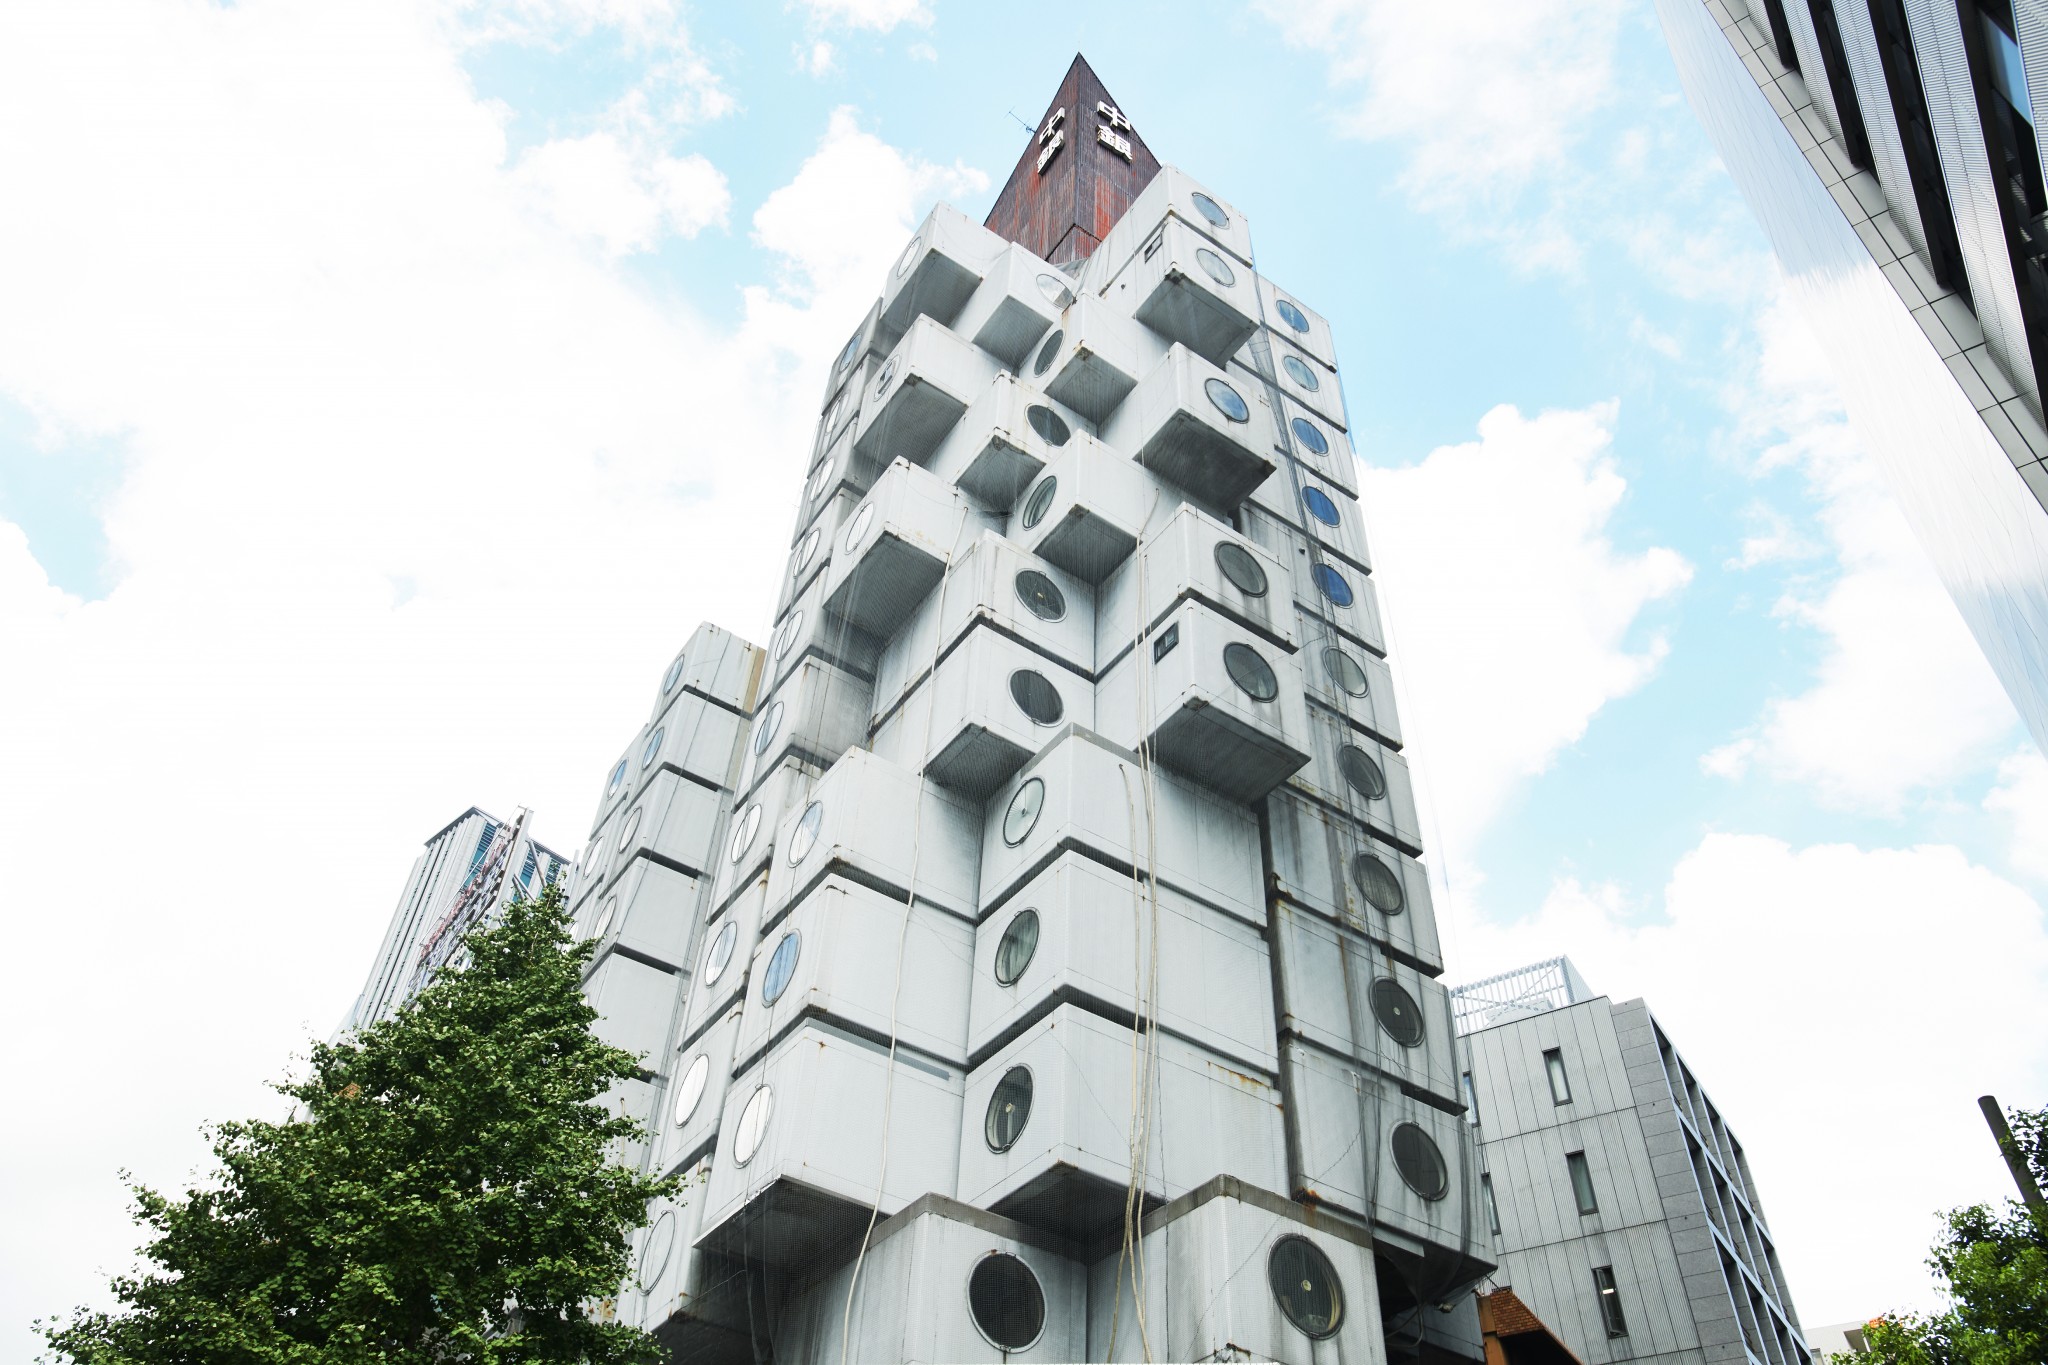 建築好きは必見 銀座 建築スポットをめぐるおすすめ散歩コース Hanako Tokyo Goo ニュース